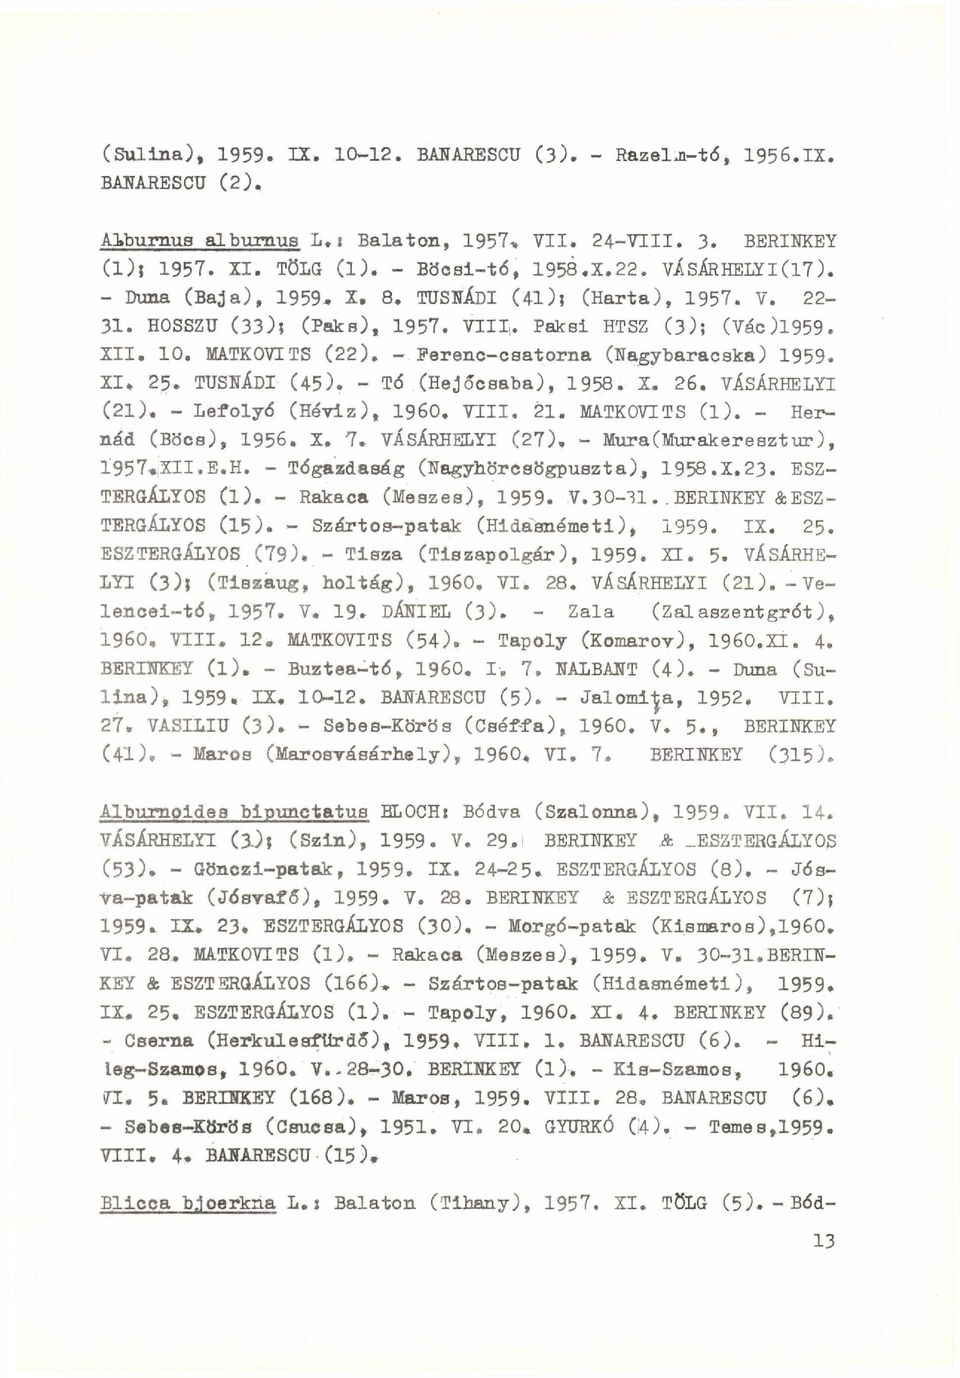 - Ferenc-csatorna (Nagybaracska) 1959. XI, 25. TUSNÁDI (45). - Tó (Hejőcsaba), 1958. X. 26. VÁSÁRHELYI (21), - Lefolyó (Hévíz), I960. VIII. 21. MATKOVITS (l). - Hernád (Bocs), 1956.